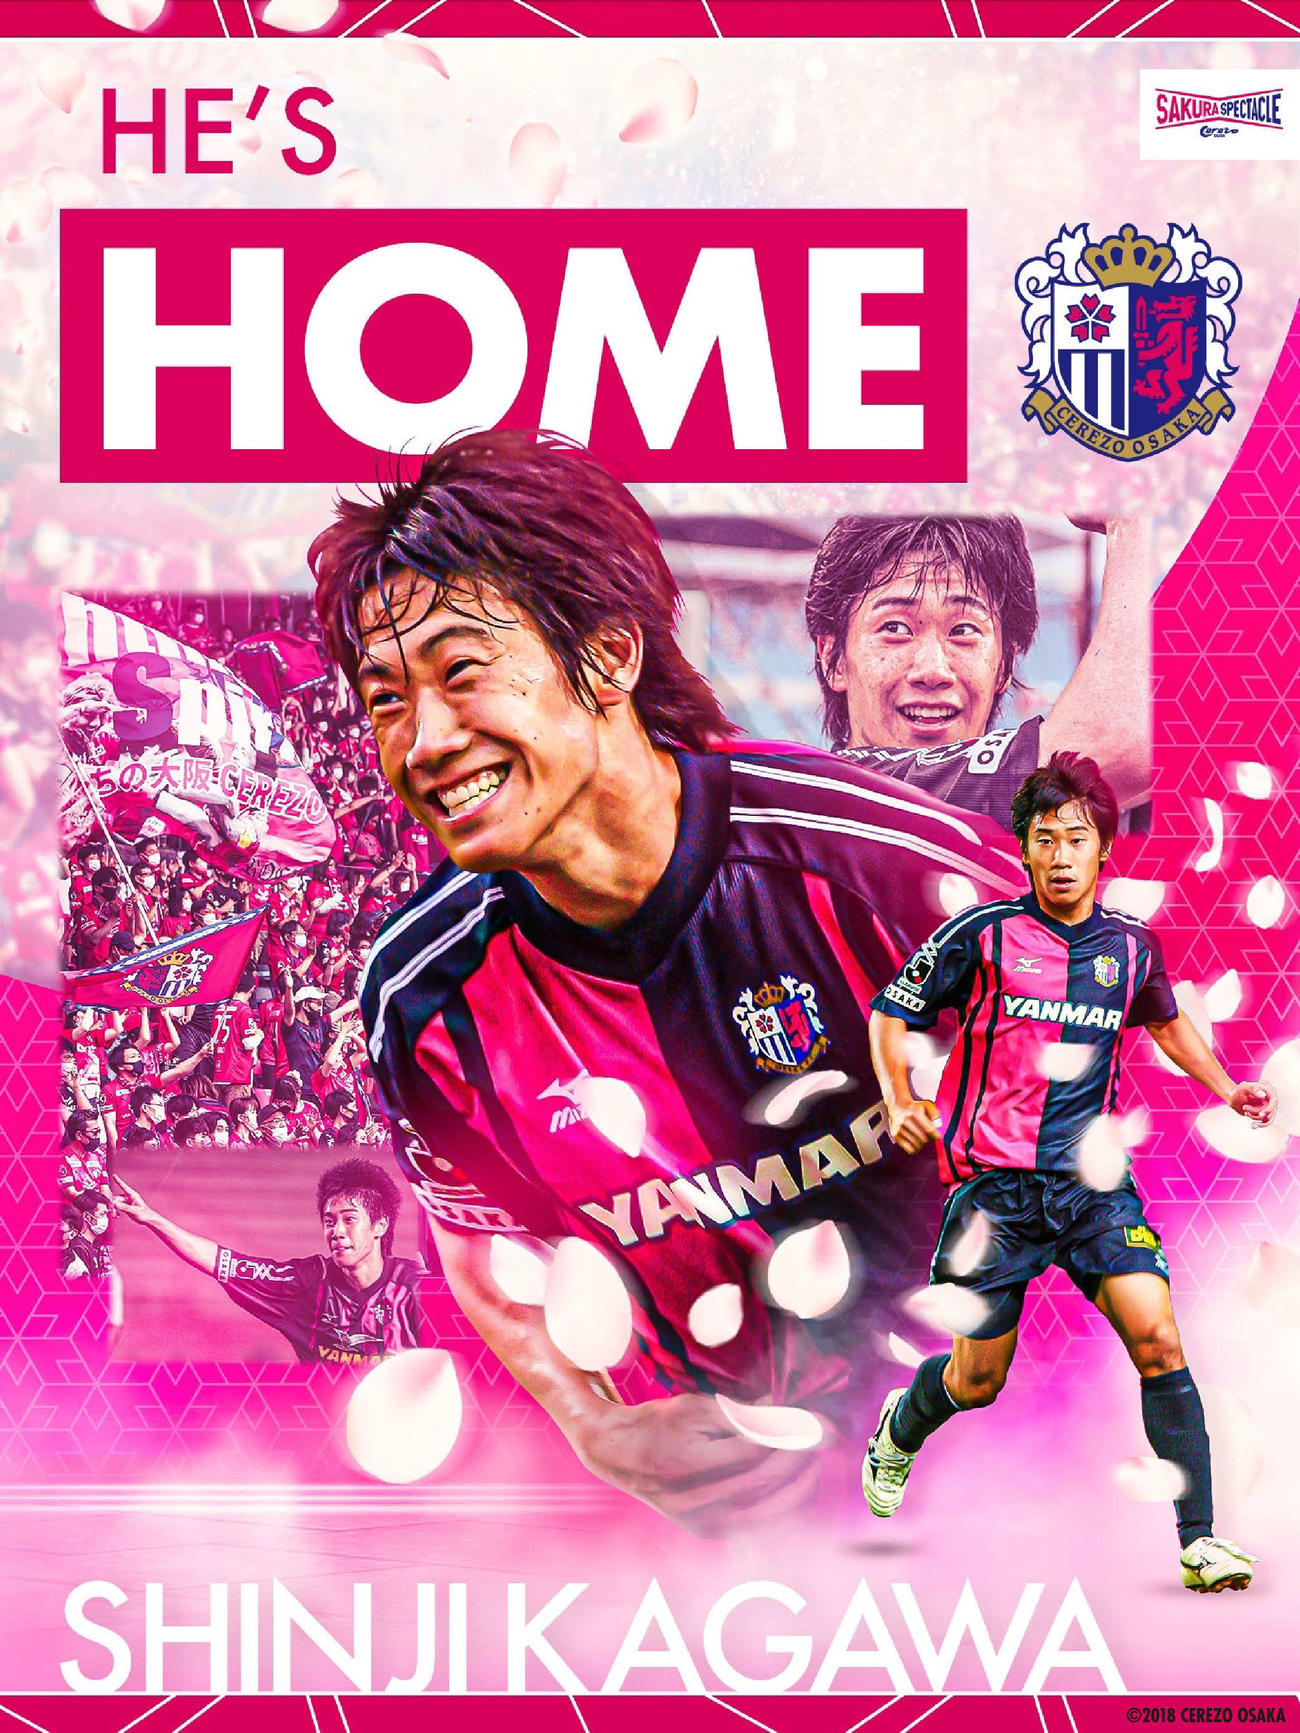 C大阪復帰が決定してクラブが作成した香川真司のイメージ写真